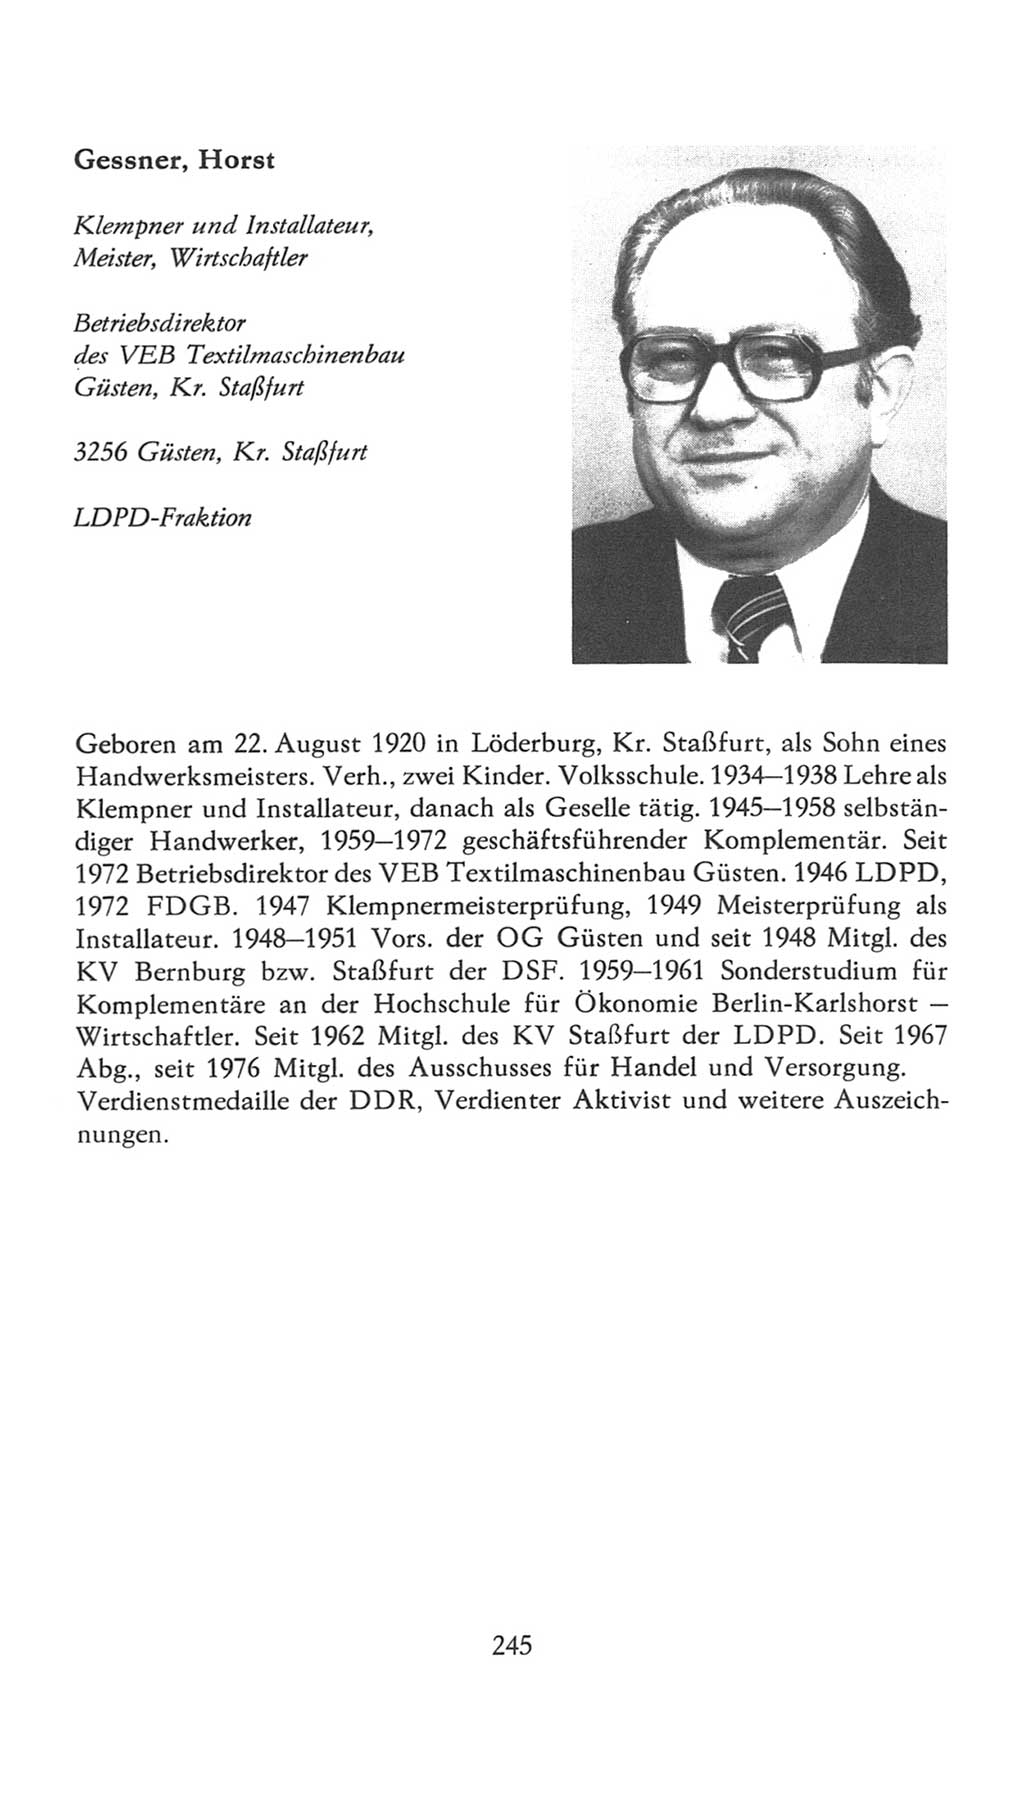 Volkskammer (VK) der Deutschen Demokratischen Republik (DDR), 7. Wahlperiode 1976-1981, Seite 245 (VK. DDR 7. WP. 1976-1981, S. 245)